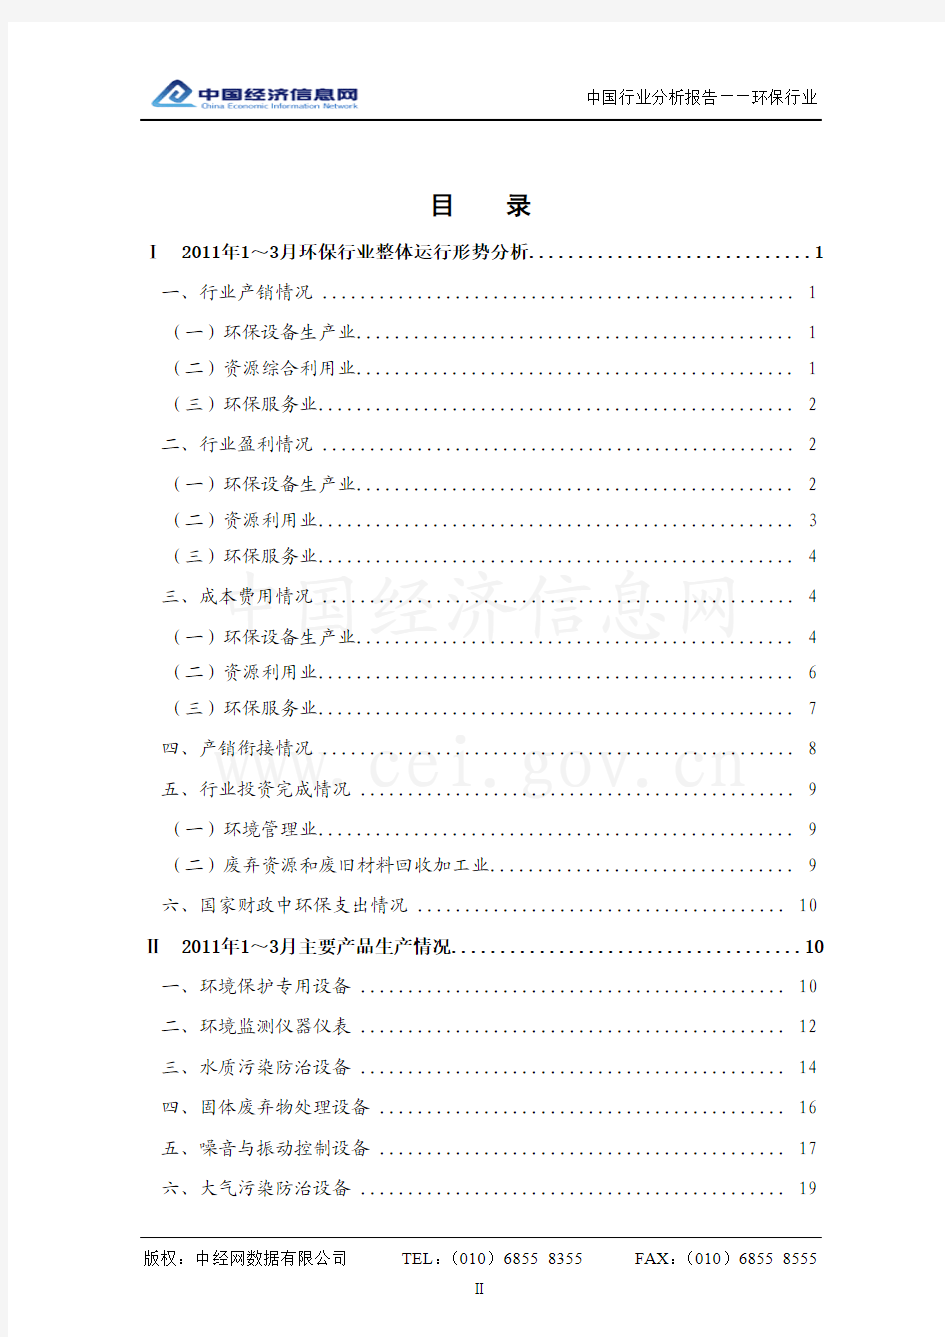 中国环保行业分析报告(2011年1季度)